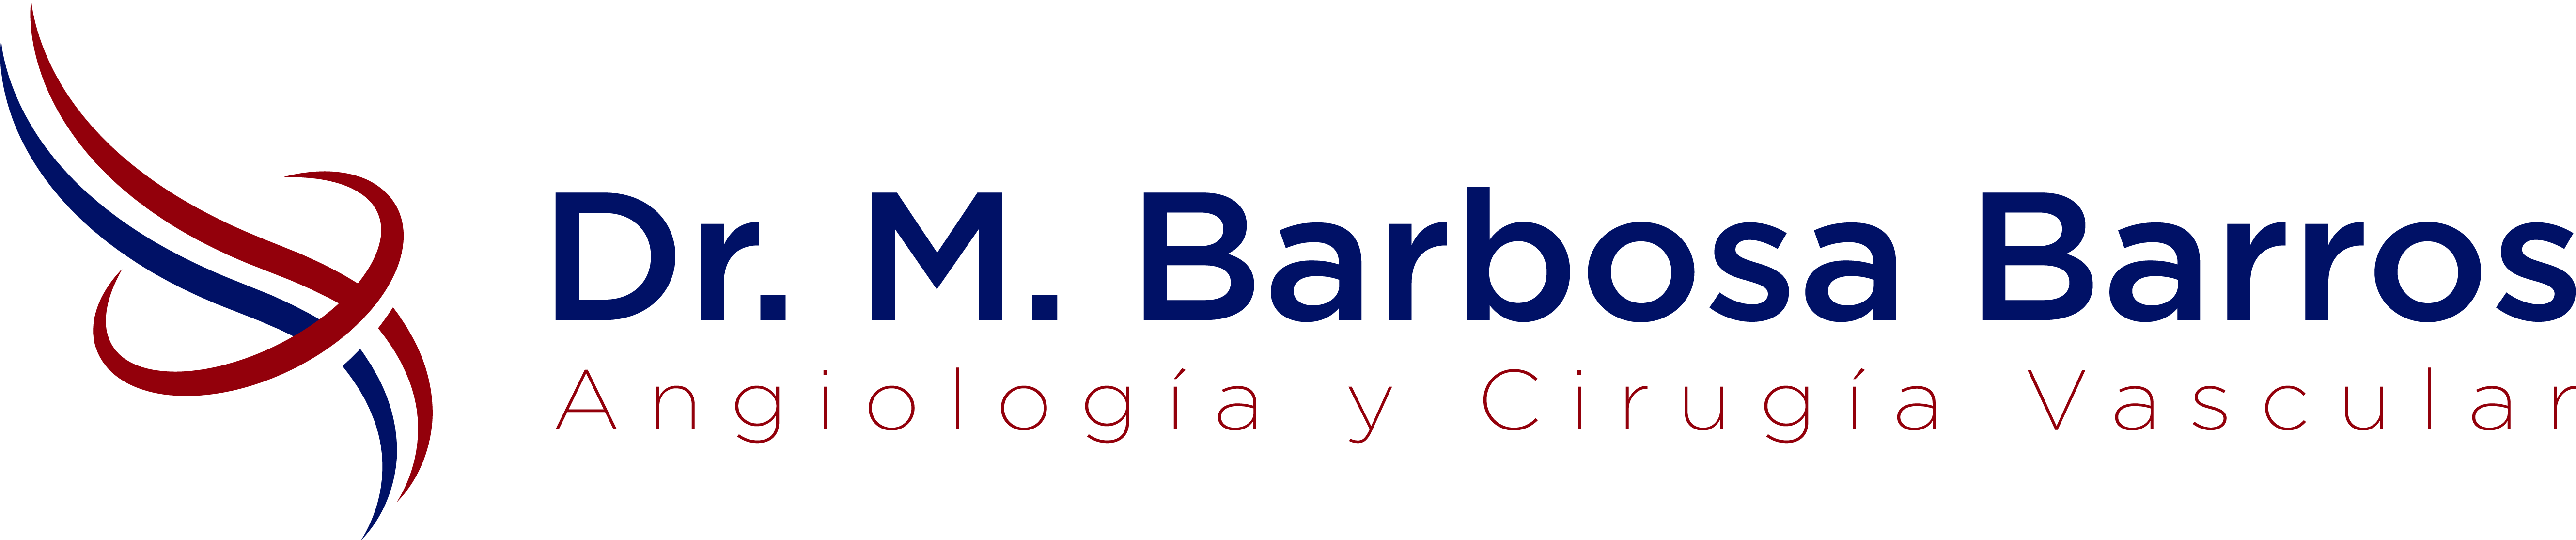 Varices-Barcelona-Logo